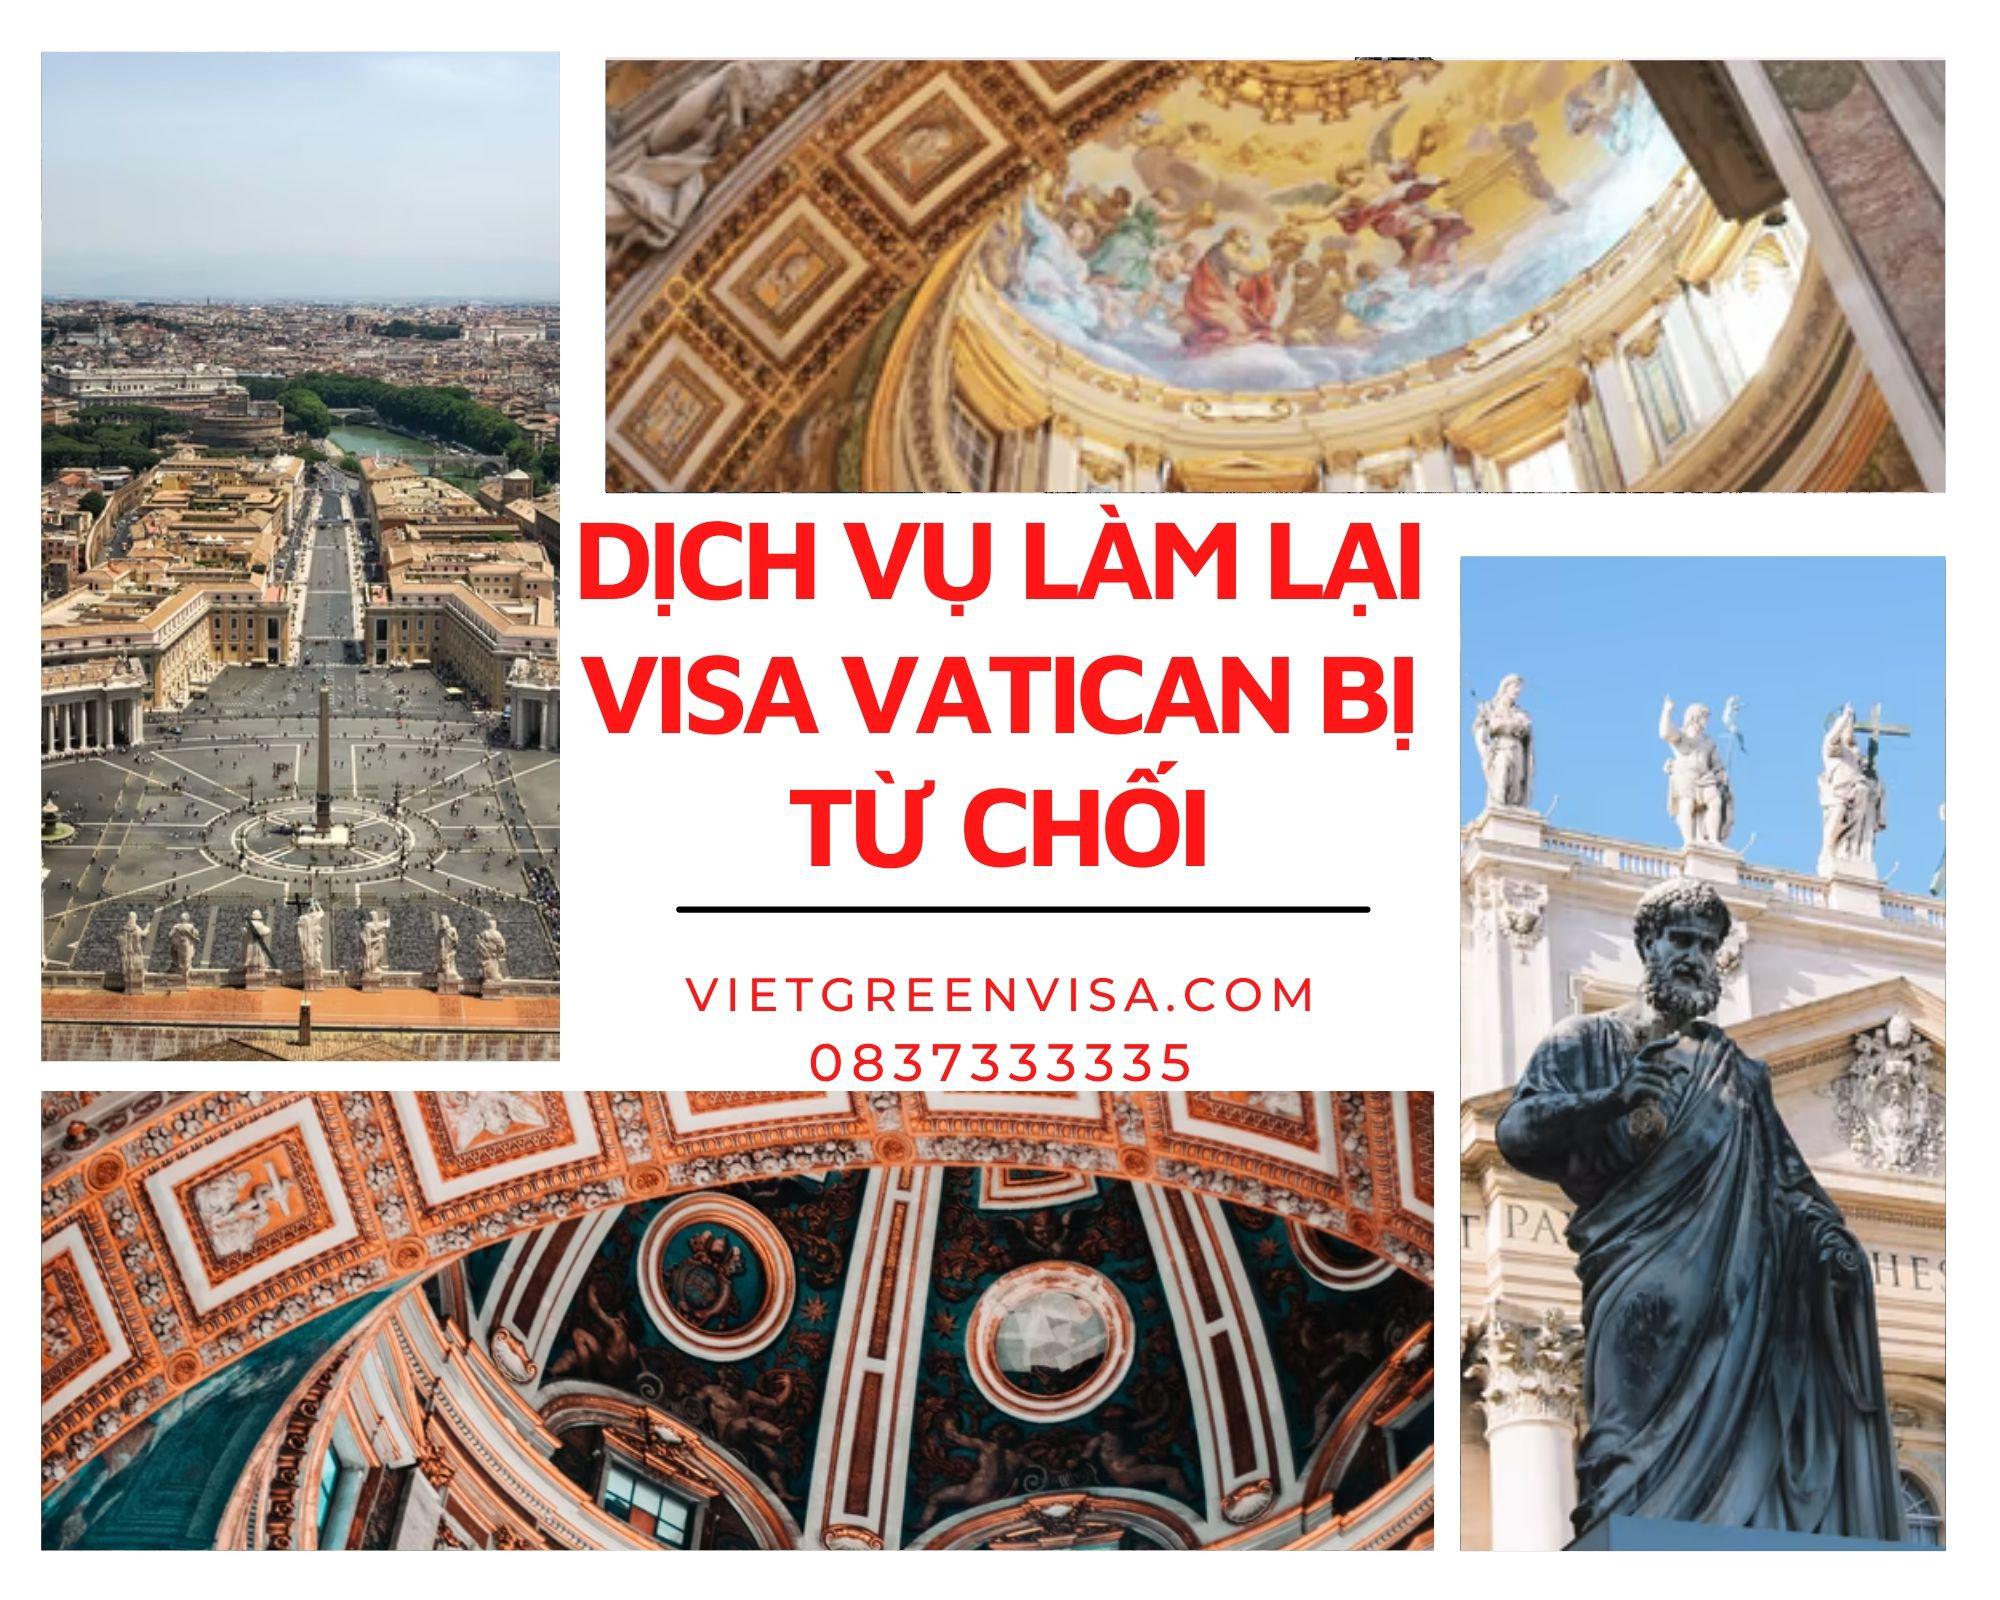 Xử lý visa Vatican bị từ chốI nhanh chóng